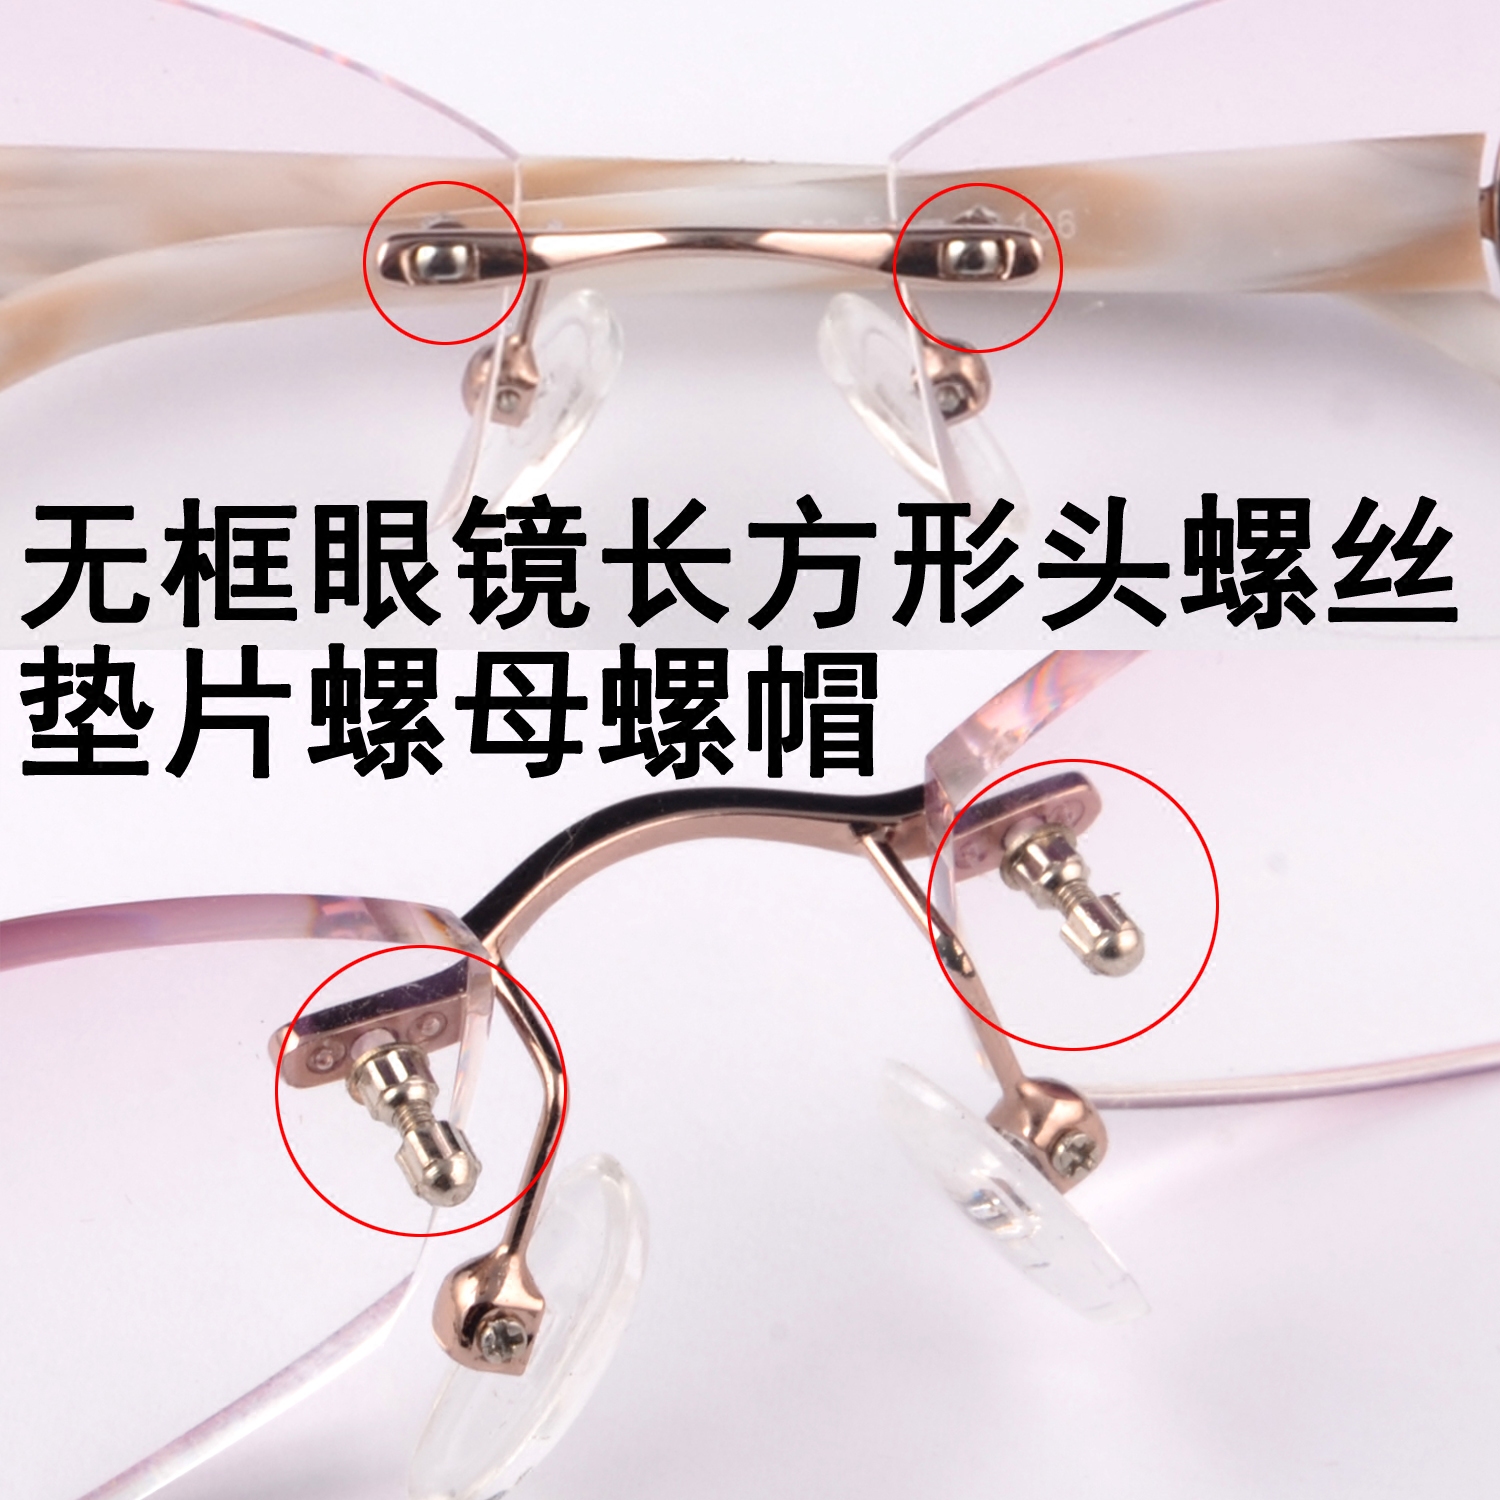 眼镜框架配件螺丝 眼睛螺丝刀长方形无框眼镜固定镜片螺丝螺母帽